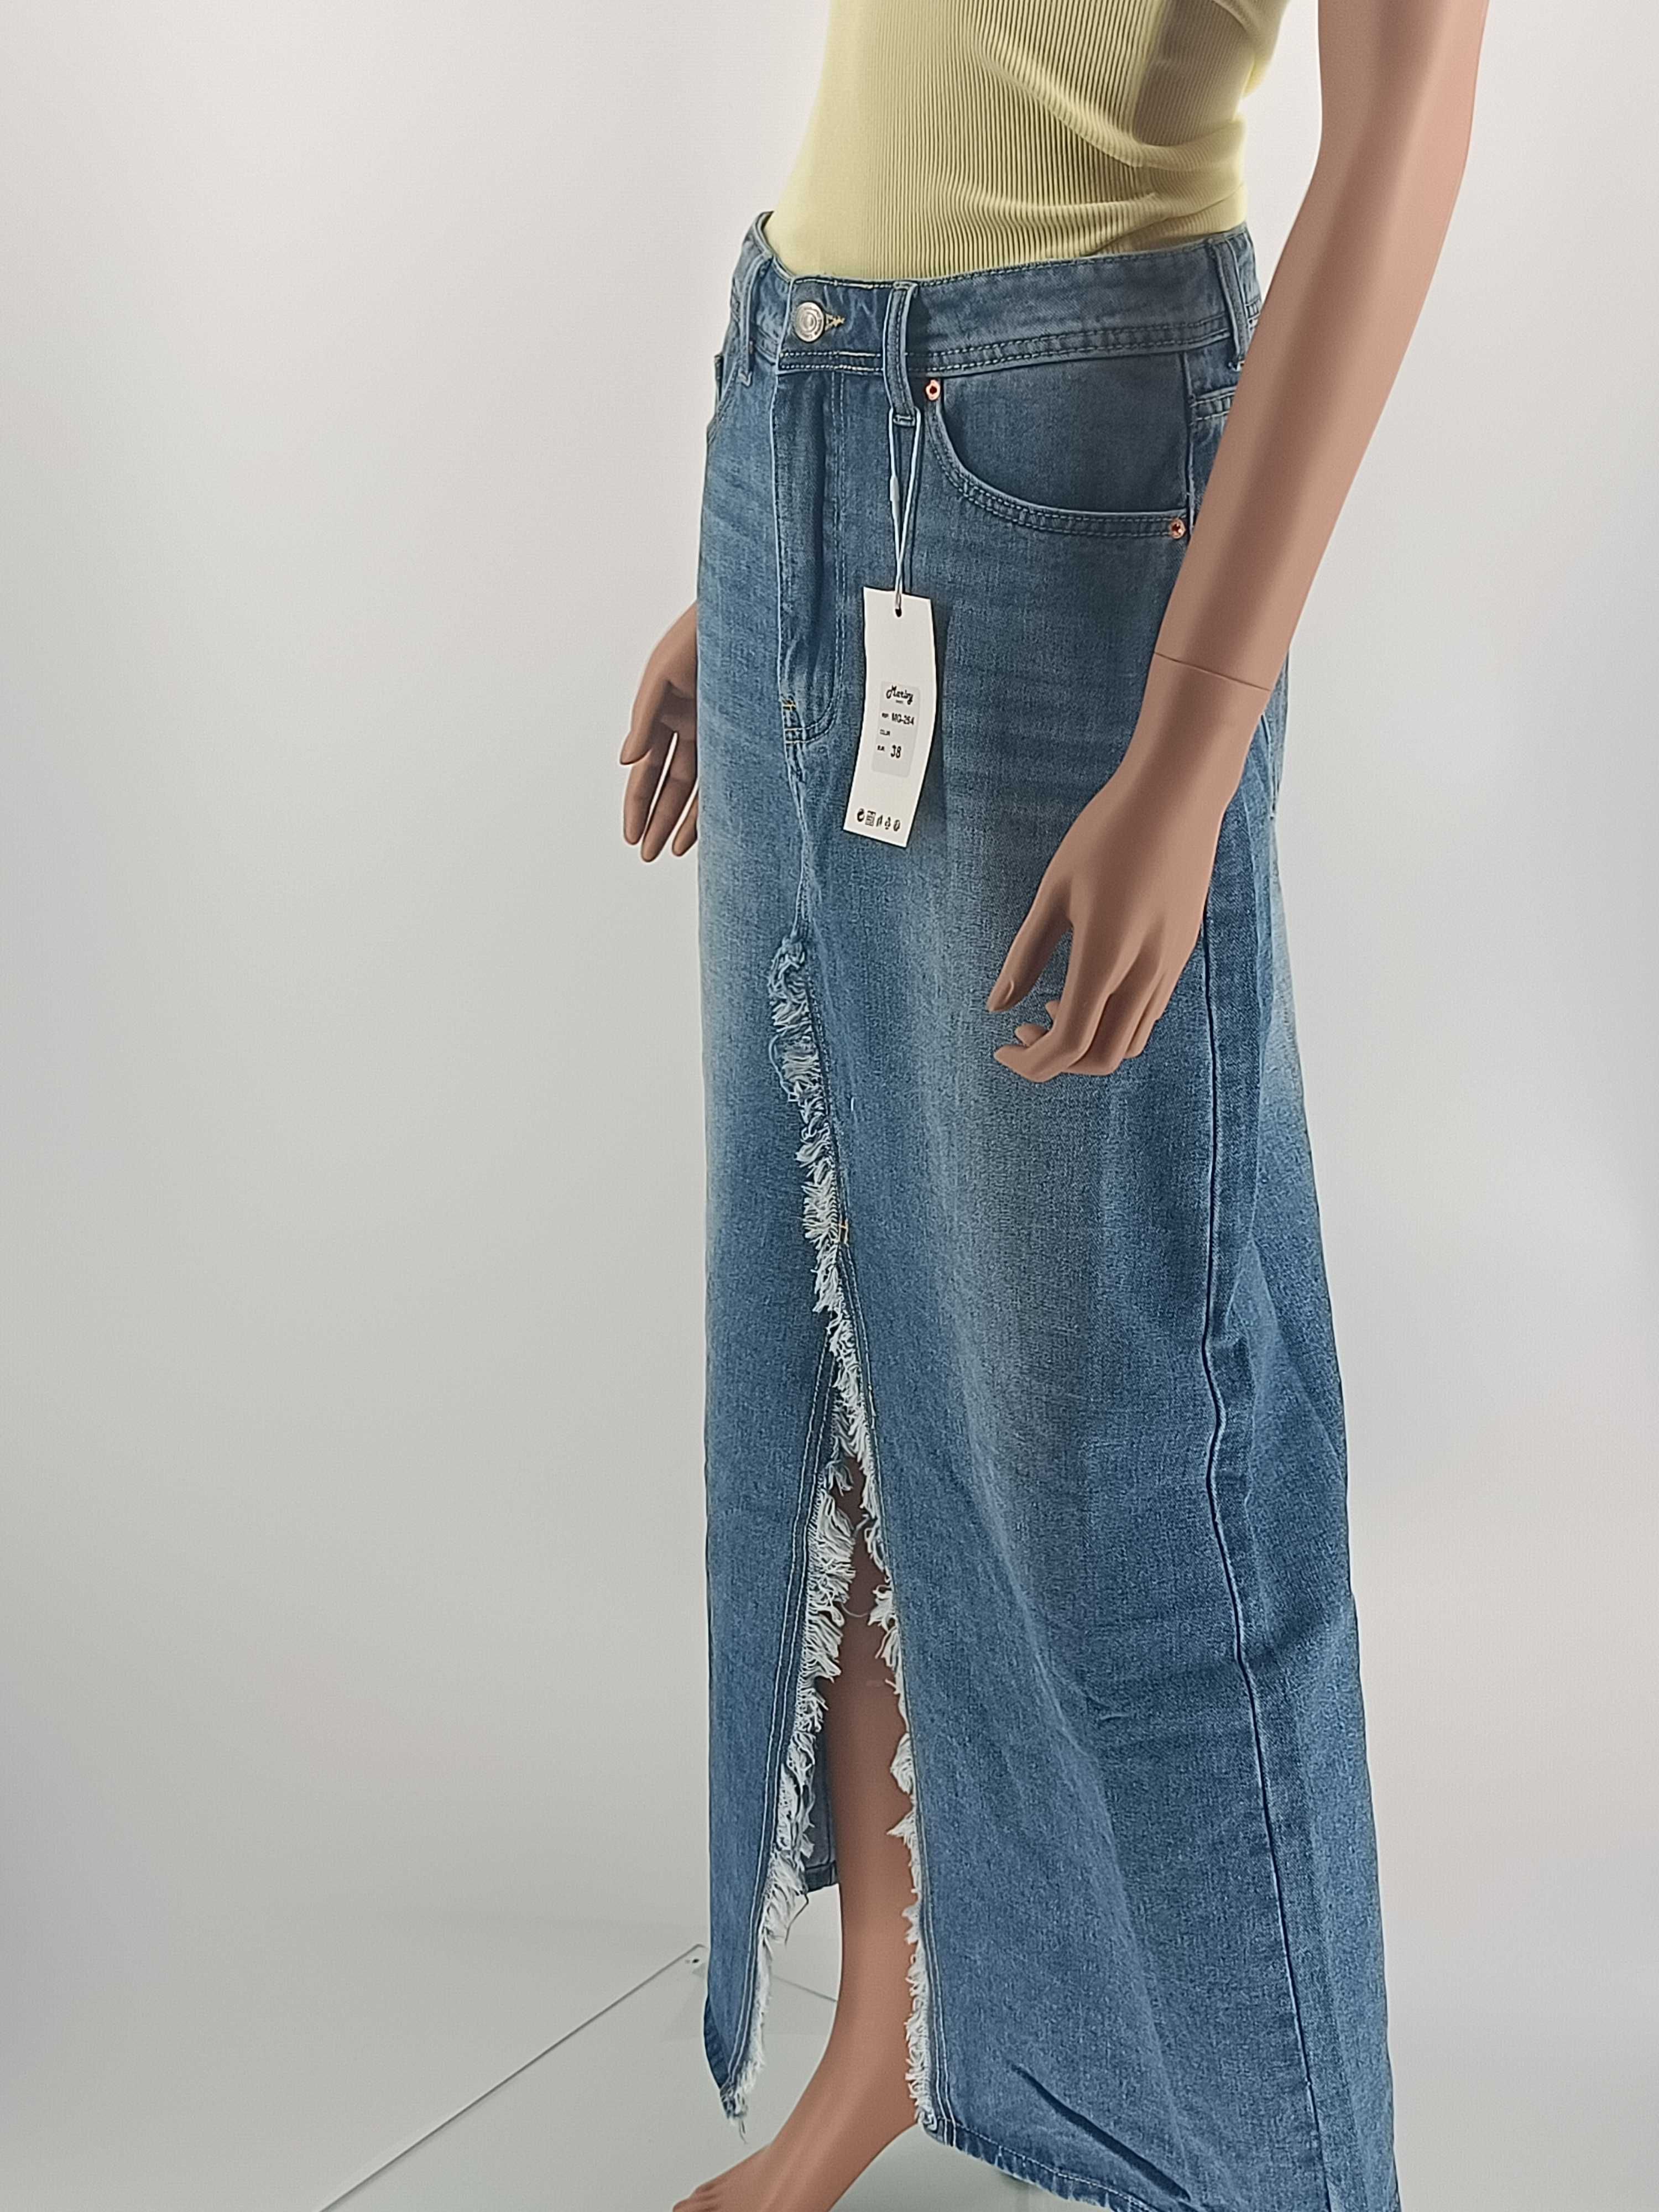 Spódnica jeans niebieska z rozcięciem maxi rozmiar 36 S